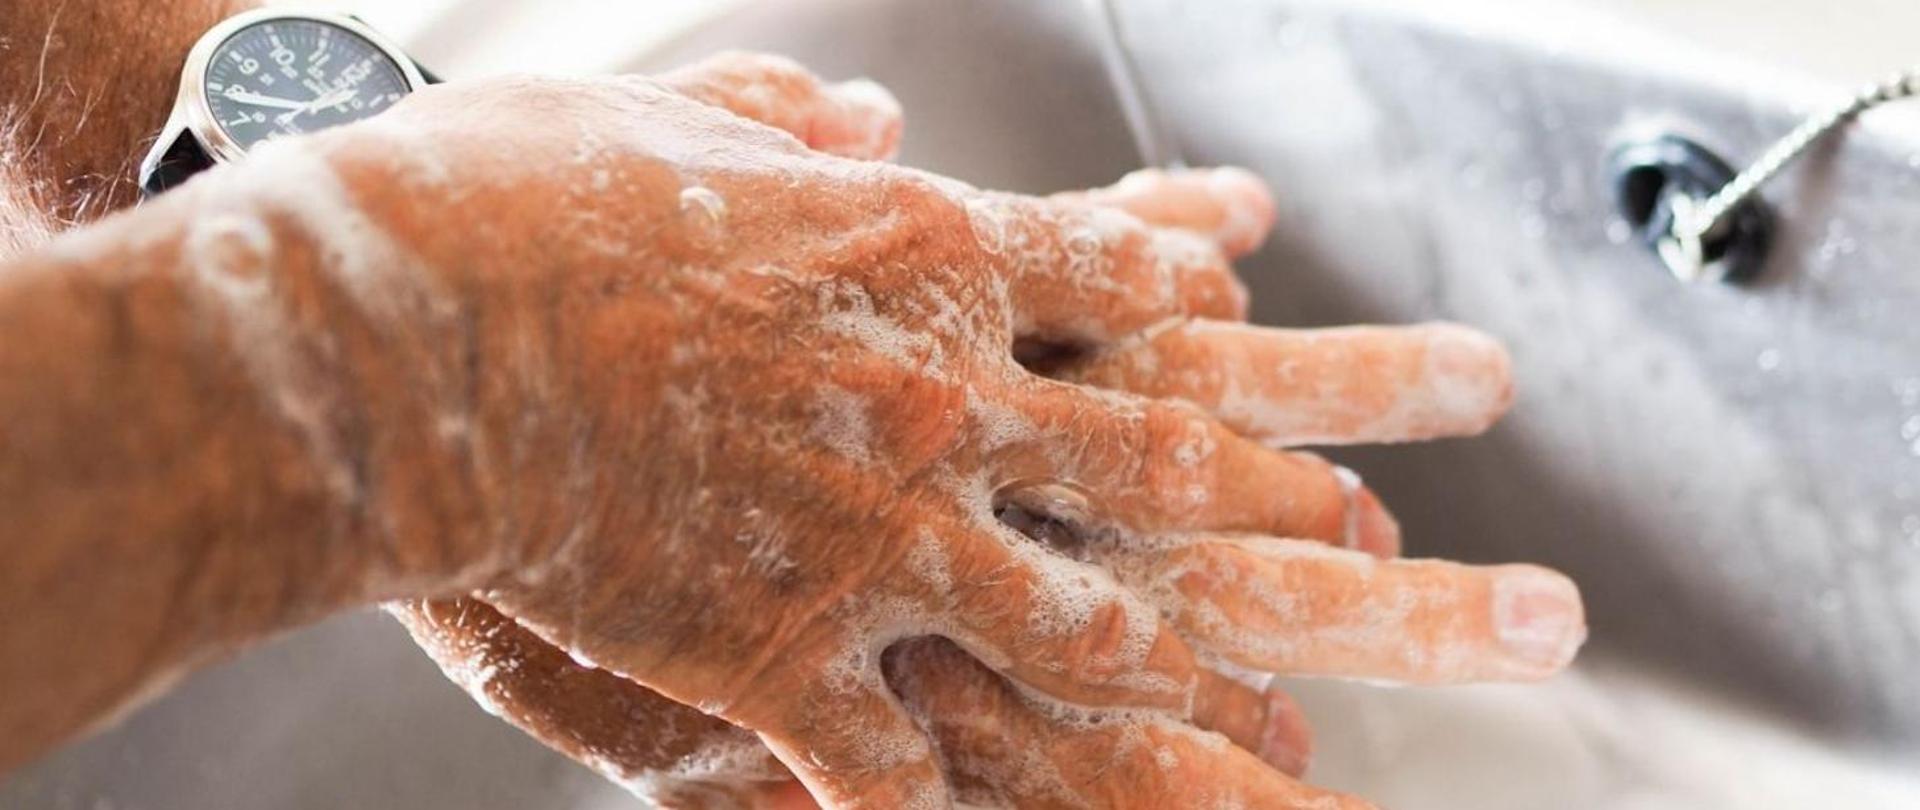 Tydzień Higieny Rąk